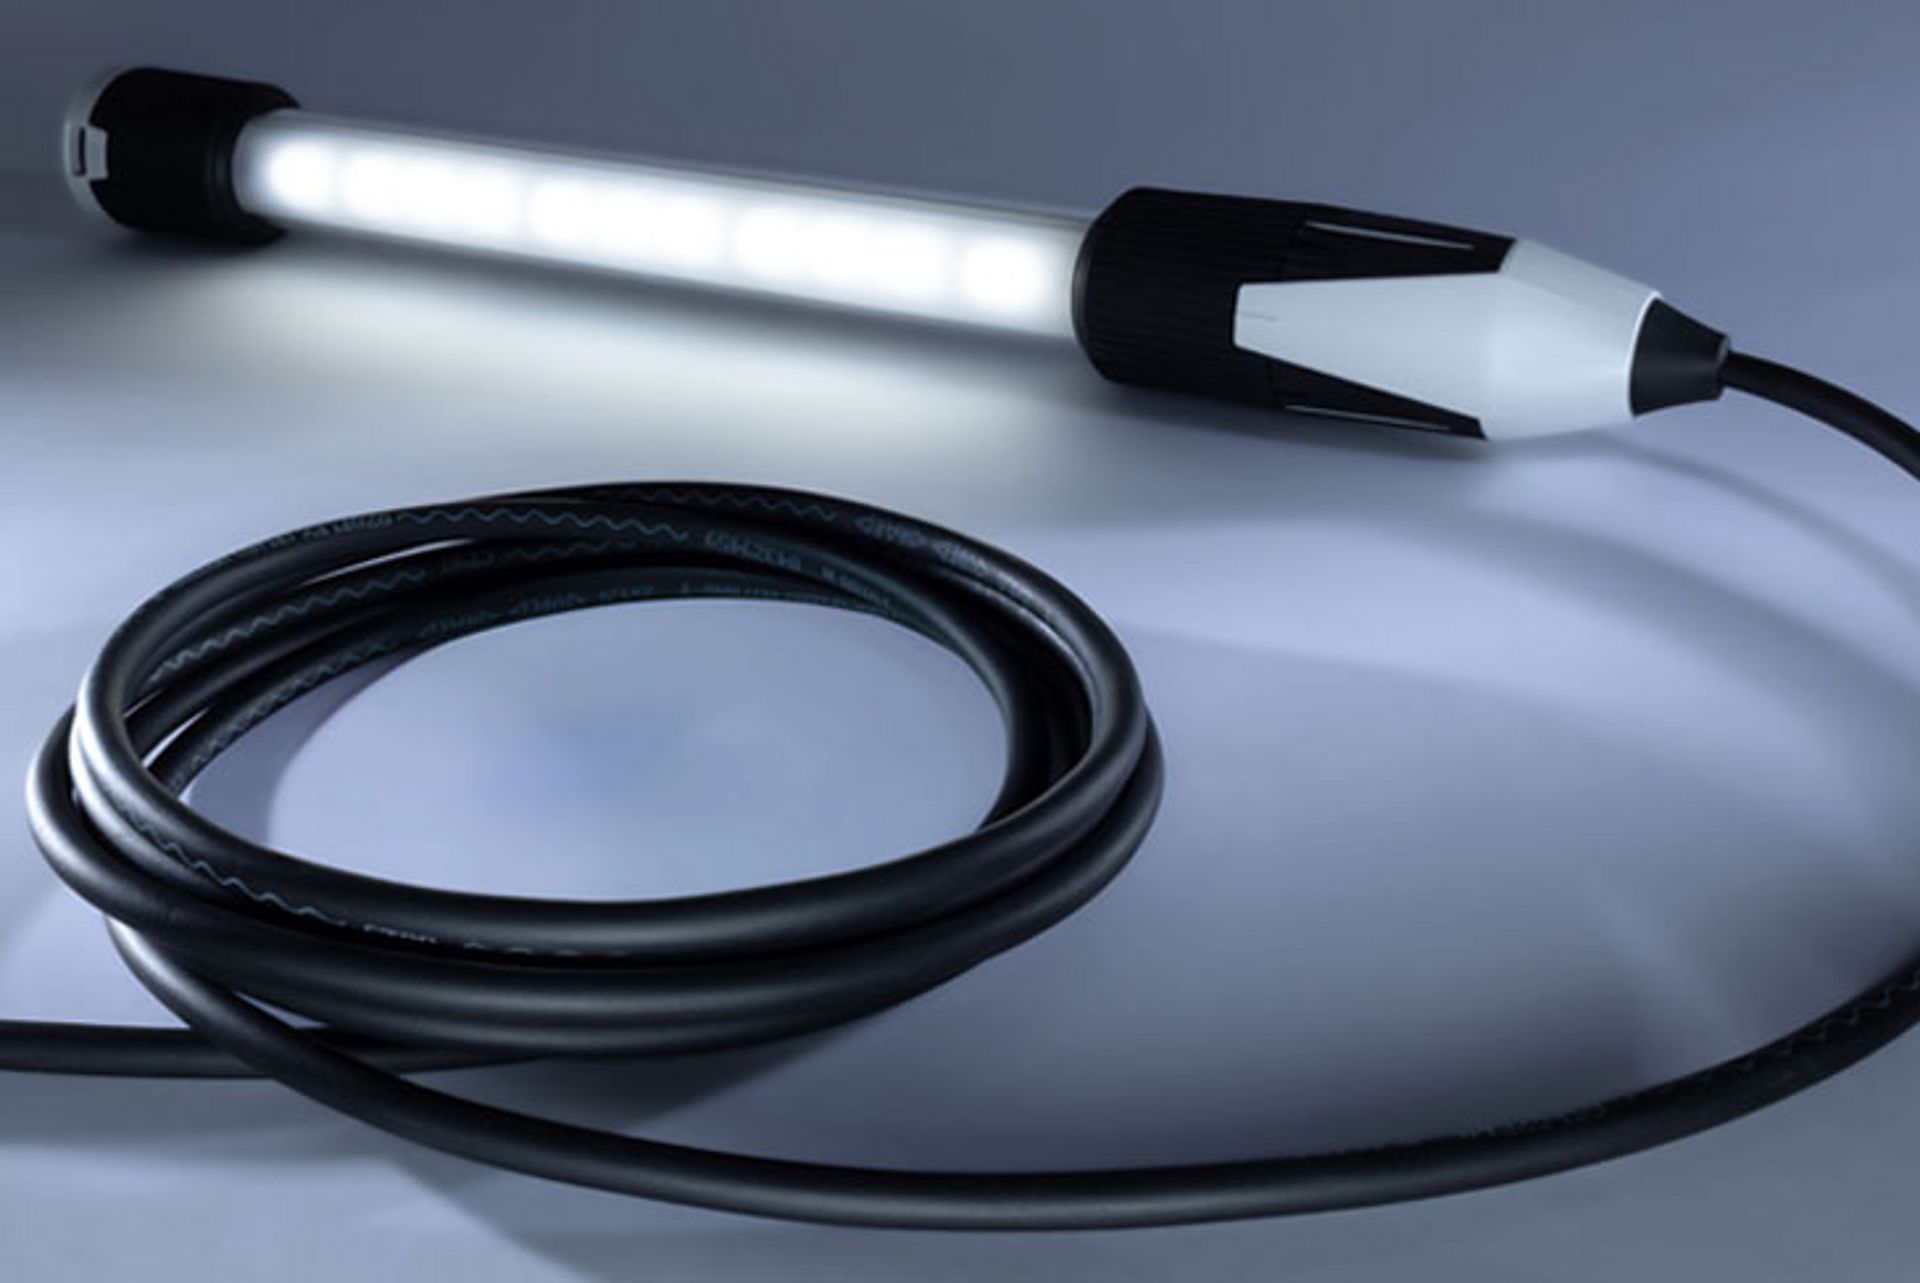 Oprawy LED 6036 to kompletny zestaw gotowy do użycia w każdych warunkach.